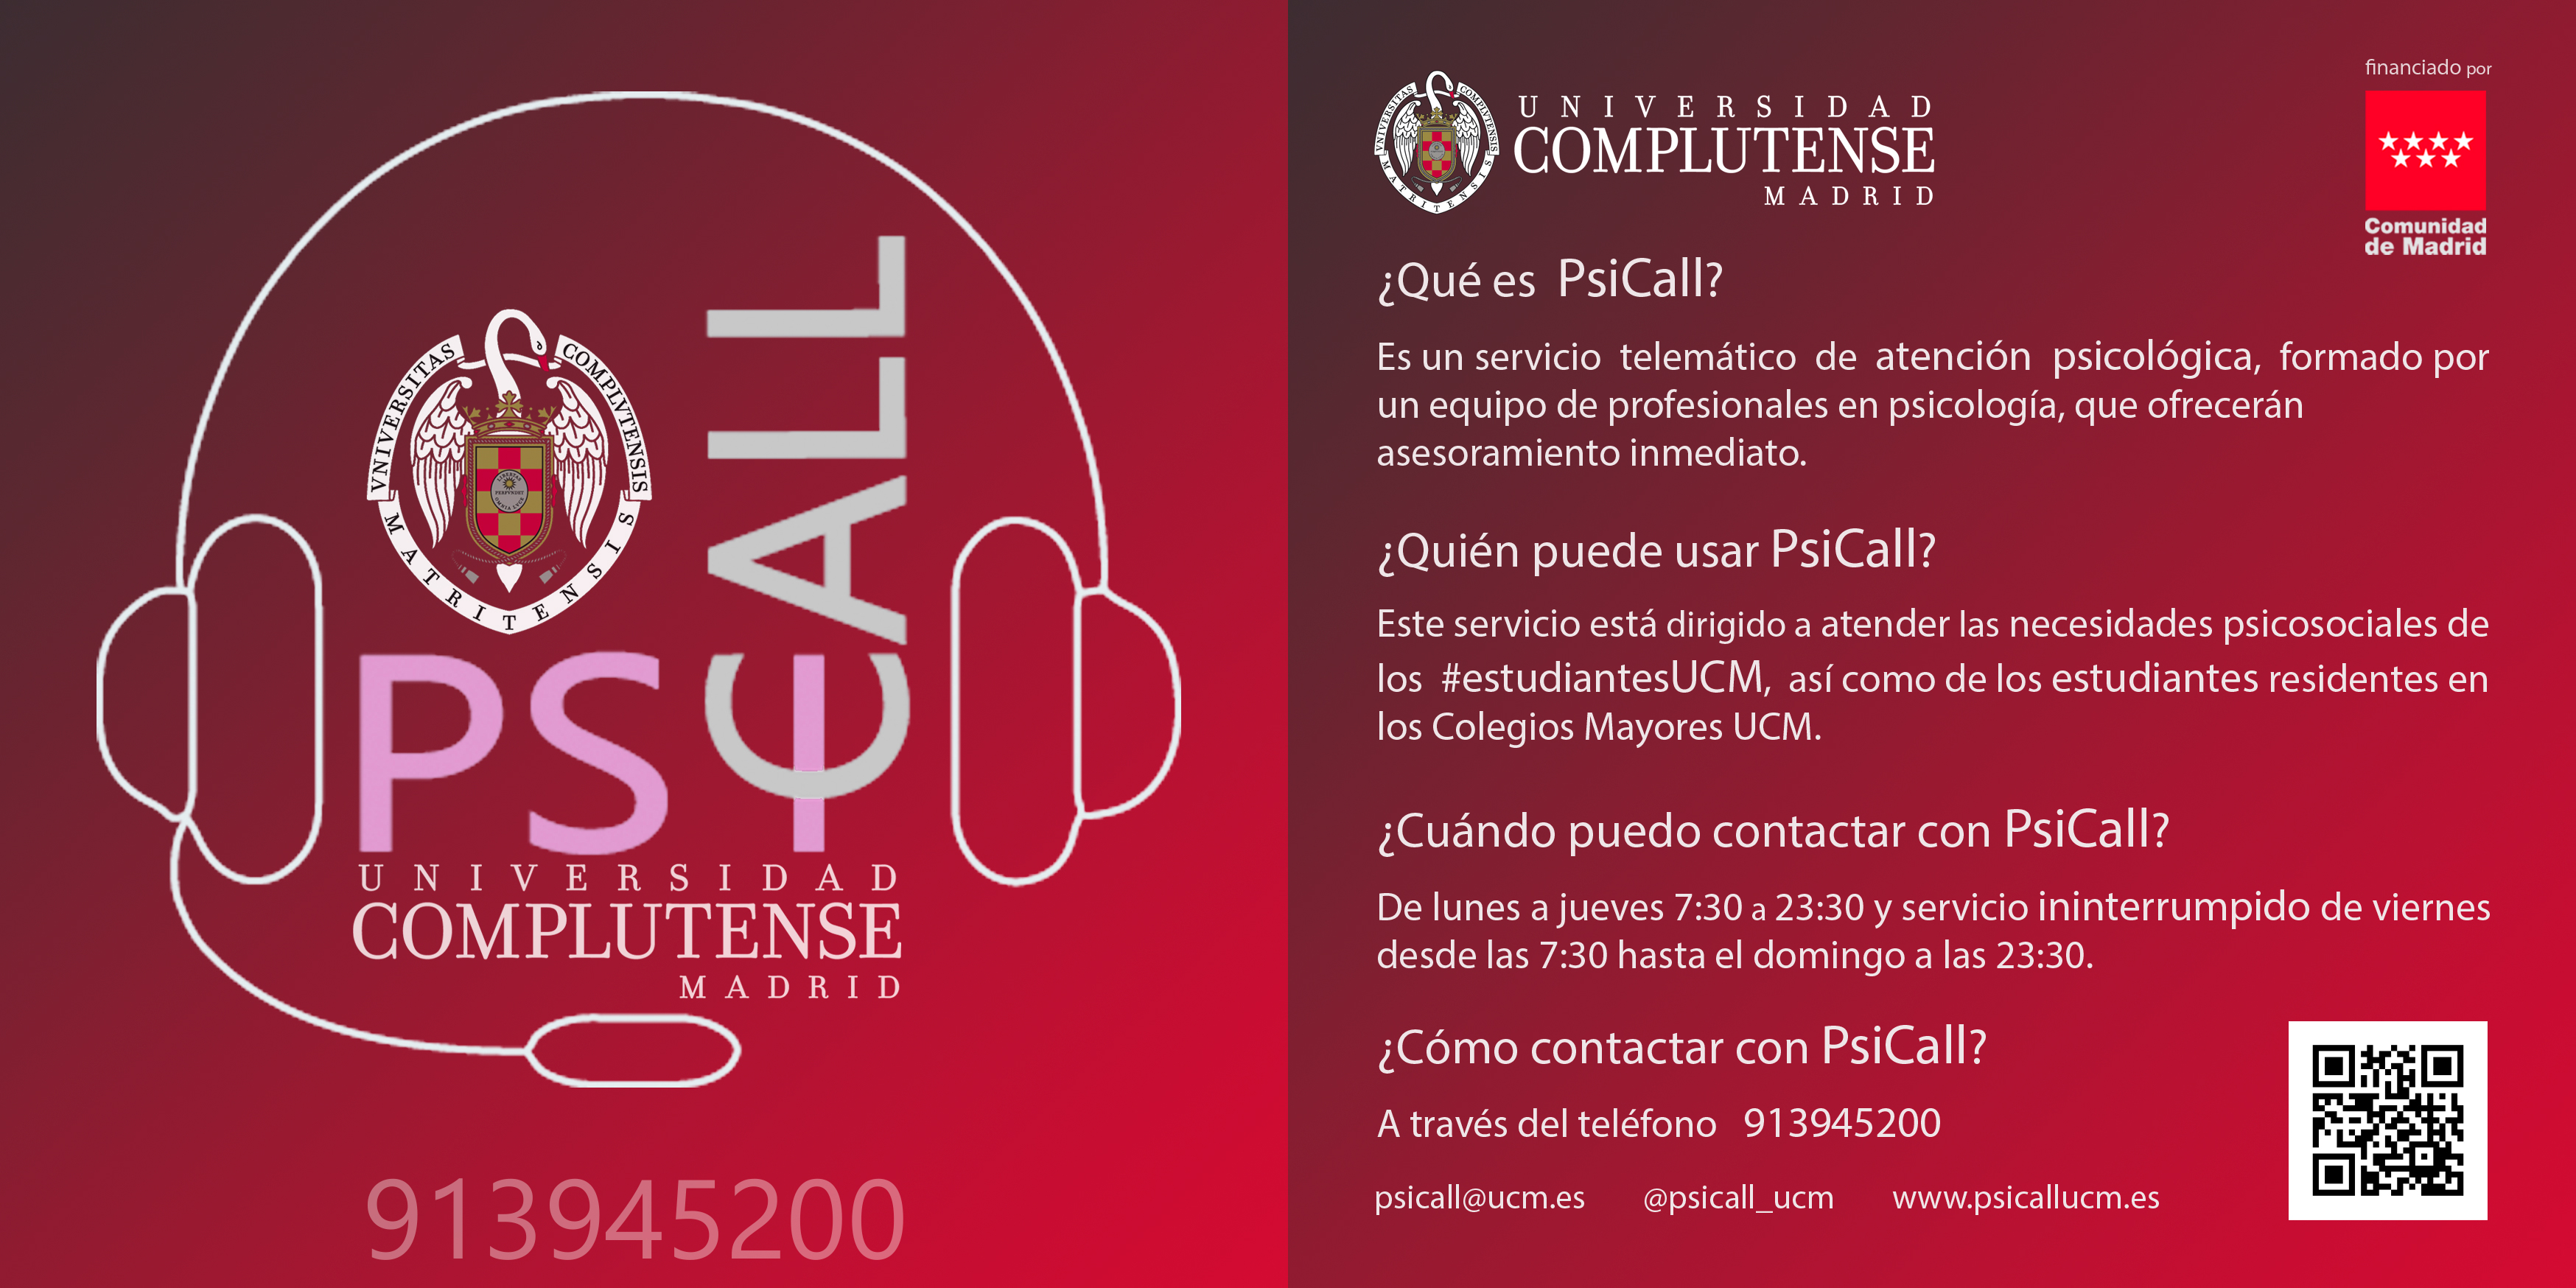 Servicio de ayuda psicológica gratuita Psicall UCM, dirigido a cubrir las necesidades psicosociales del estudiantado de la UCM - 1